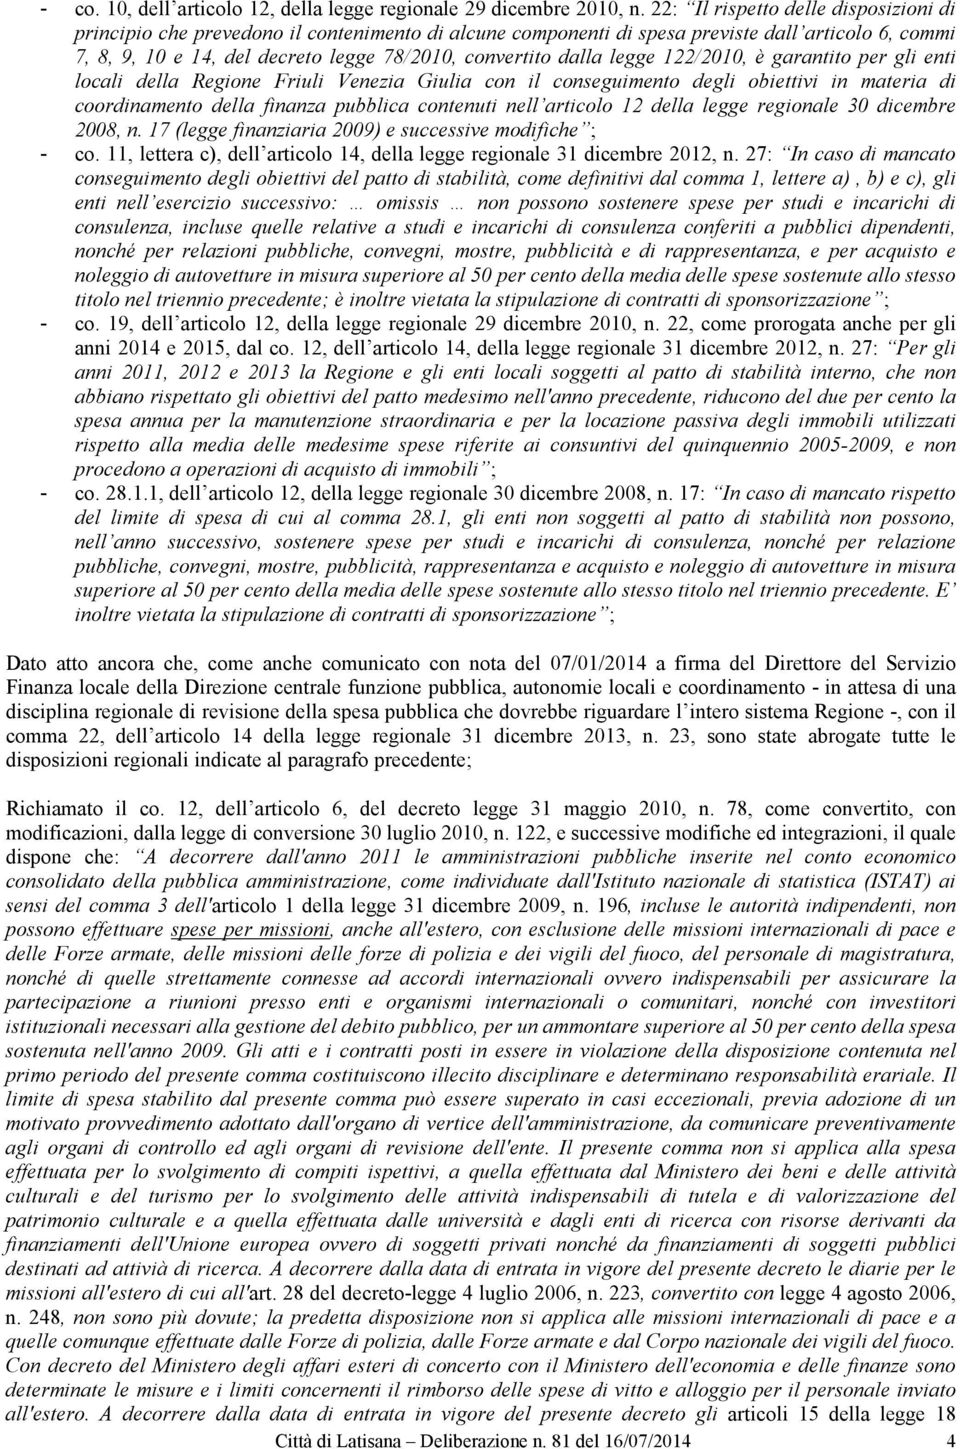 dalla legge 122/2010, è garantito per gli enti locali della Regione Friuli Venezia Giulia con il conseguimento degli obiettivi in materia di coordinamento della finanza pubblica contenuti nell